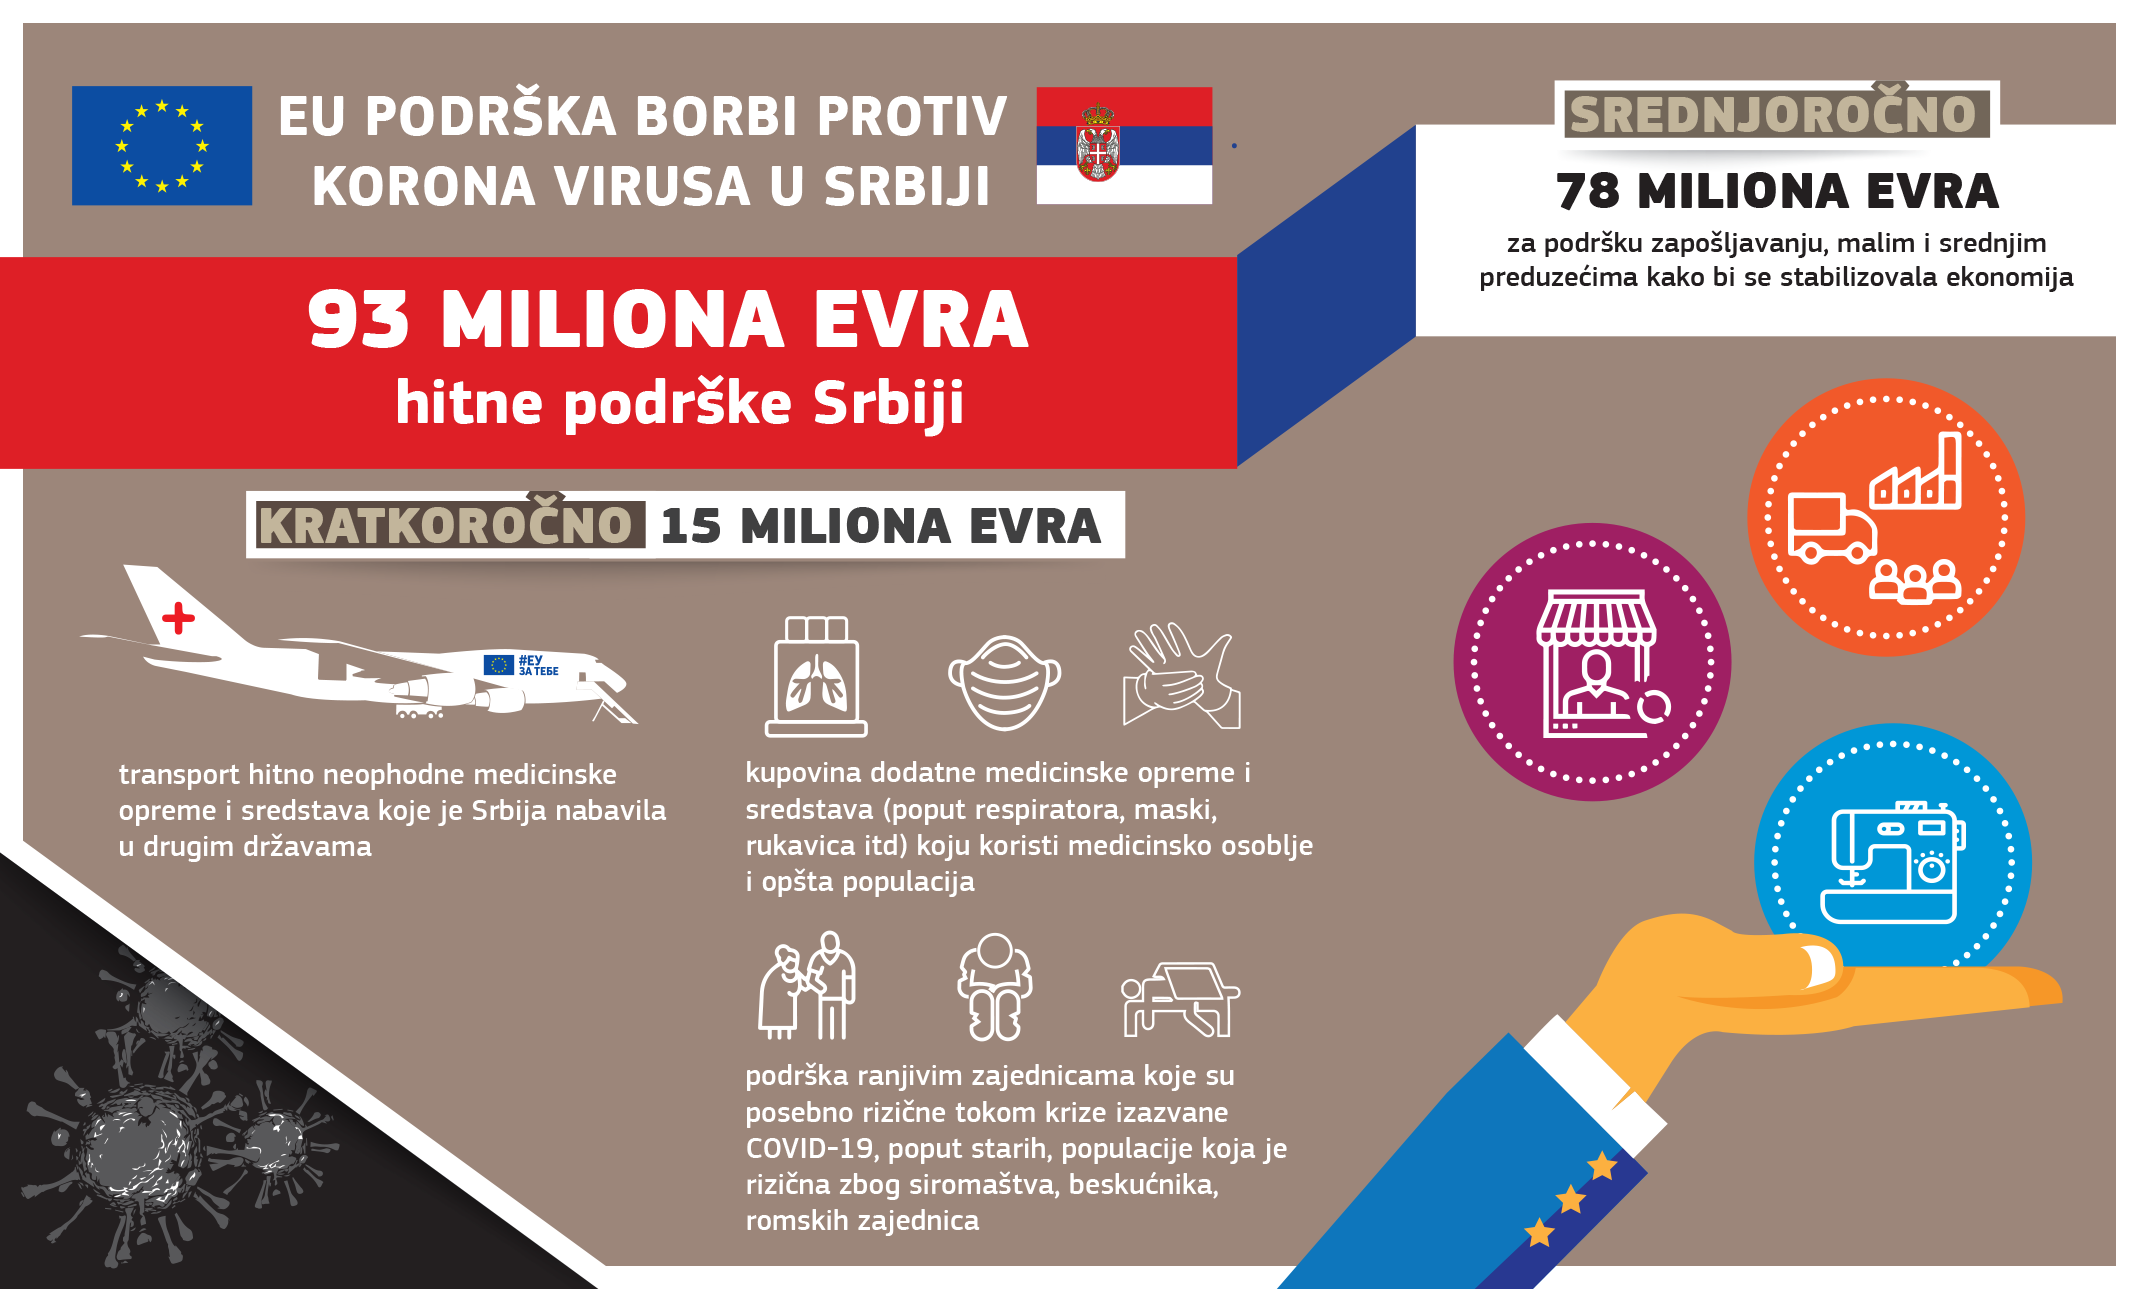 EU partnerstvo sa Srbijom: EU najbolji partner i najveći donator već 20 god...